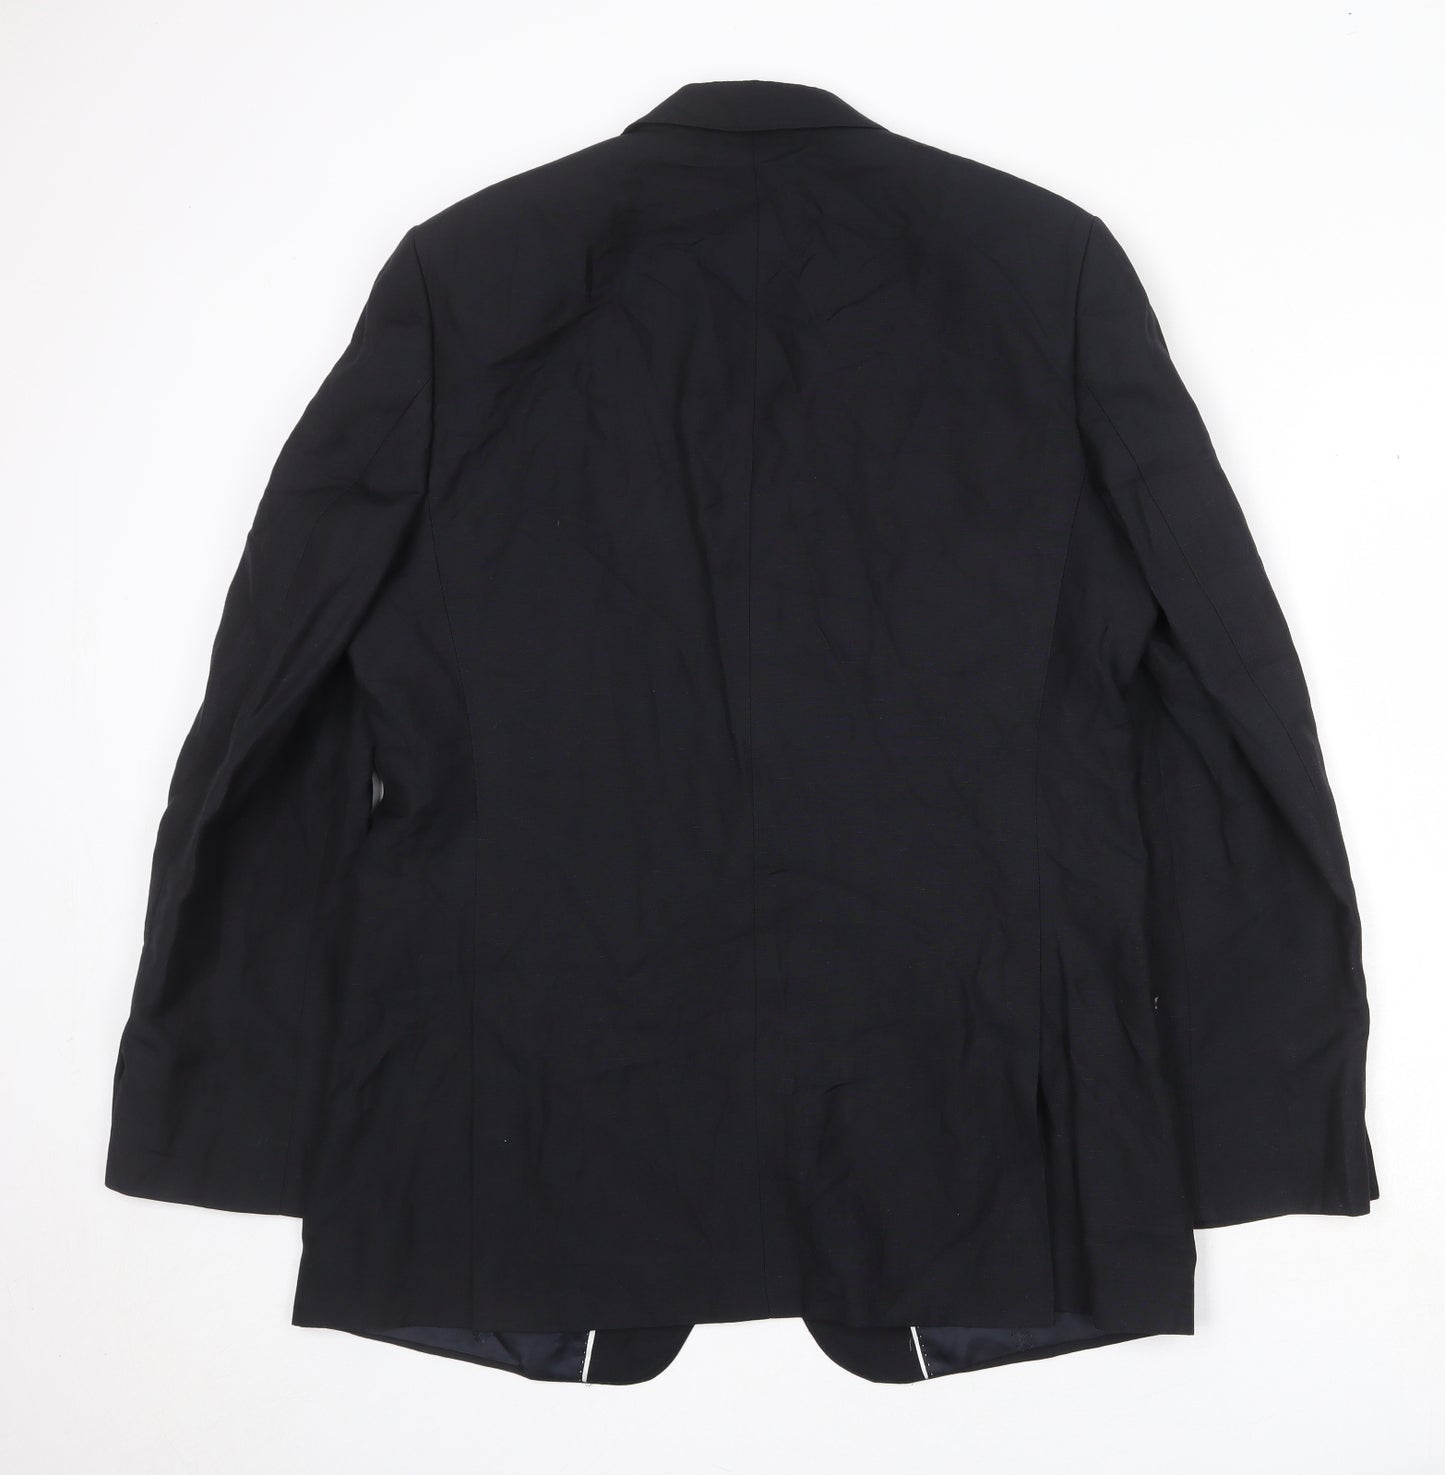 Jaeger Mens Black Silk Jacket Suit Jacket Size 44 Regular